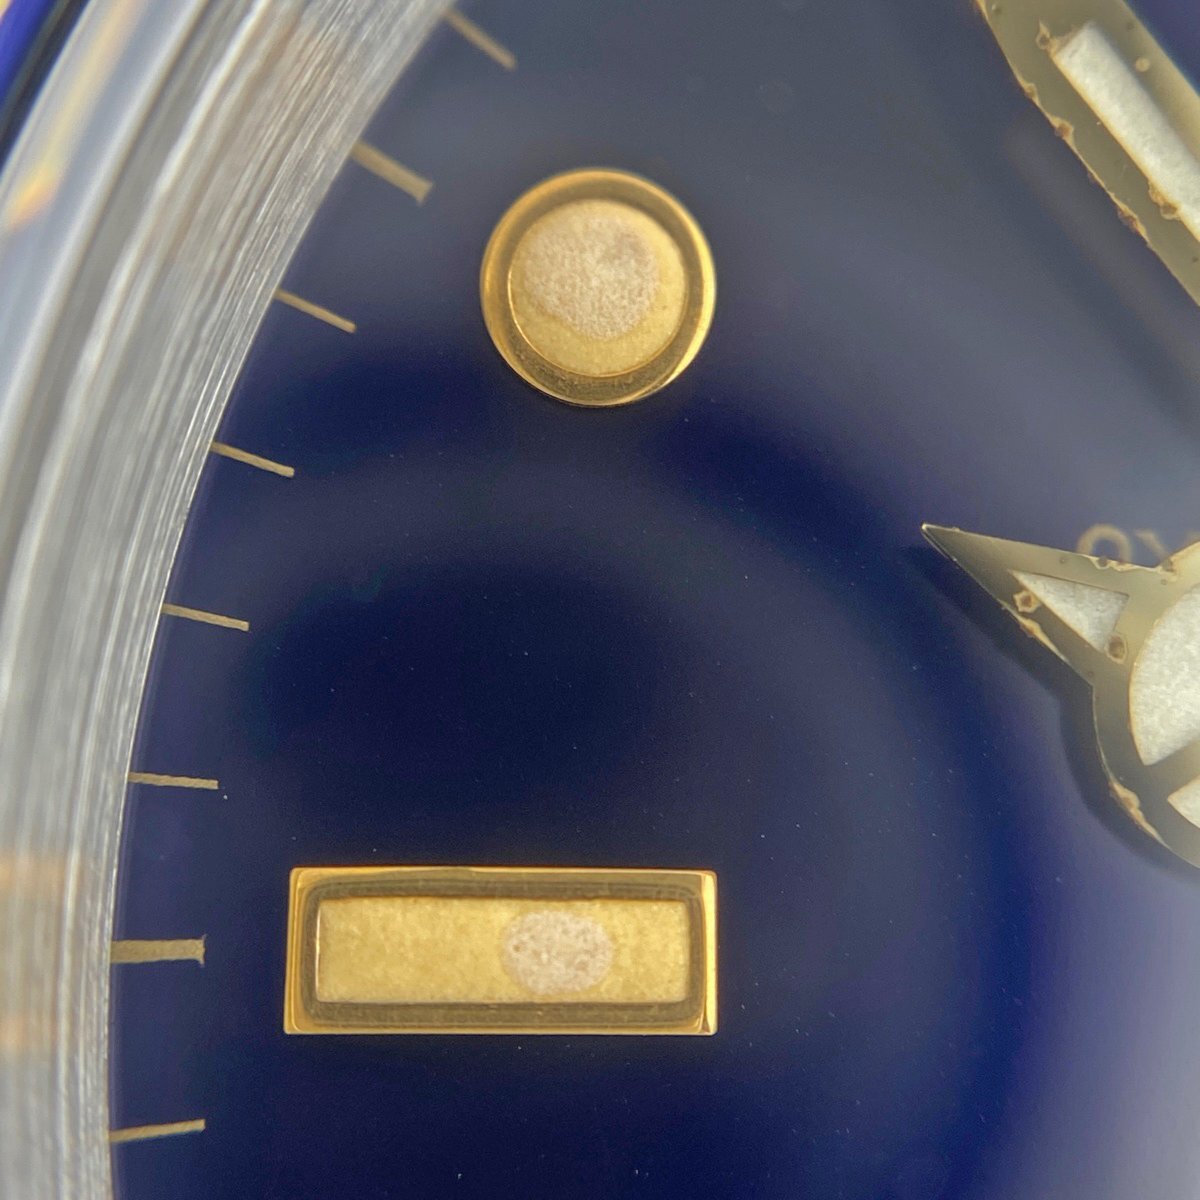 ロレックス ROLEX サブマリーナ デイト 16613 腕時計 SS YG 自動巻き ブルー メンズ 【中古】_バイセル 14150_6